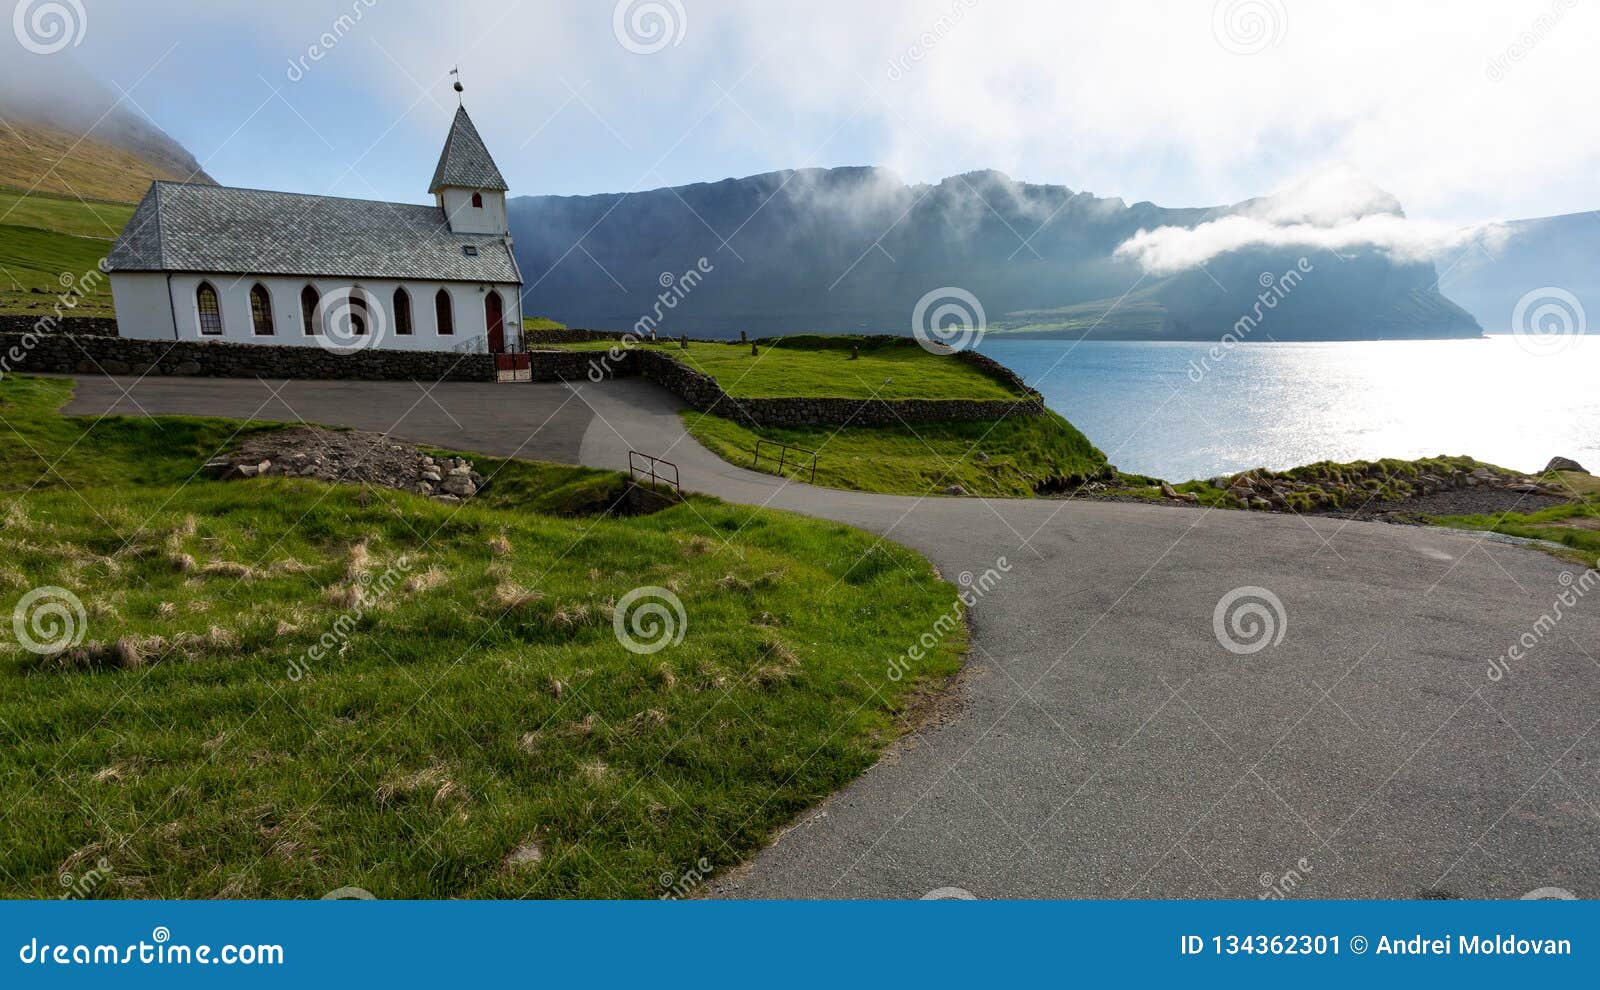 Faroe Islands Remote Village The Faroe Islands My